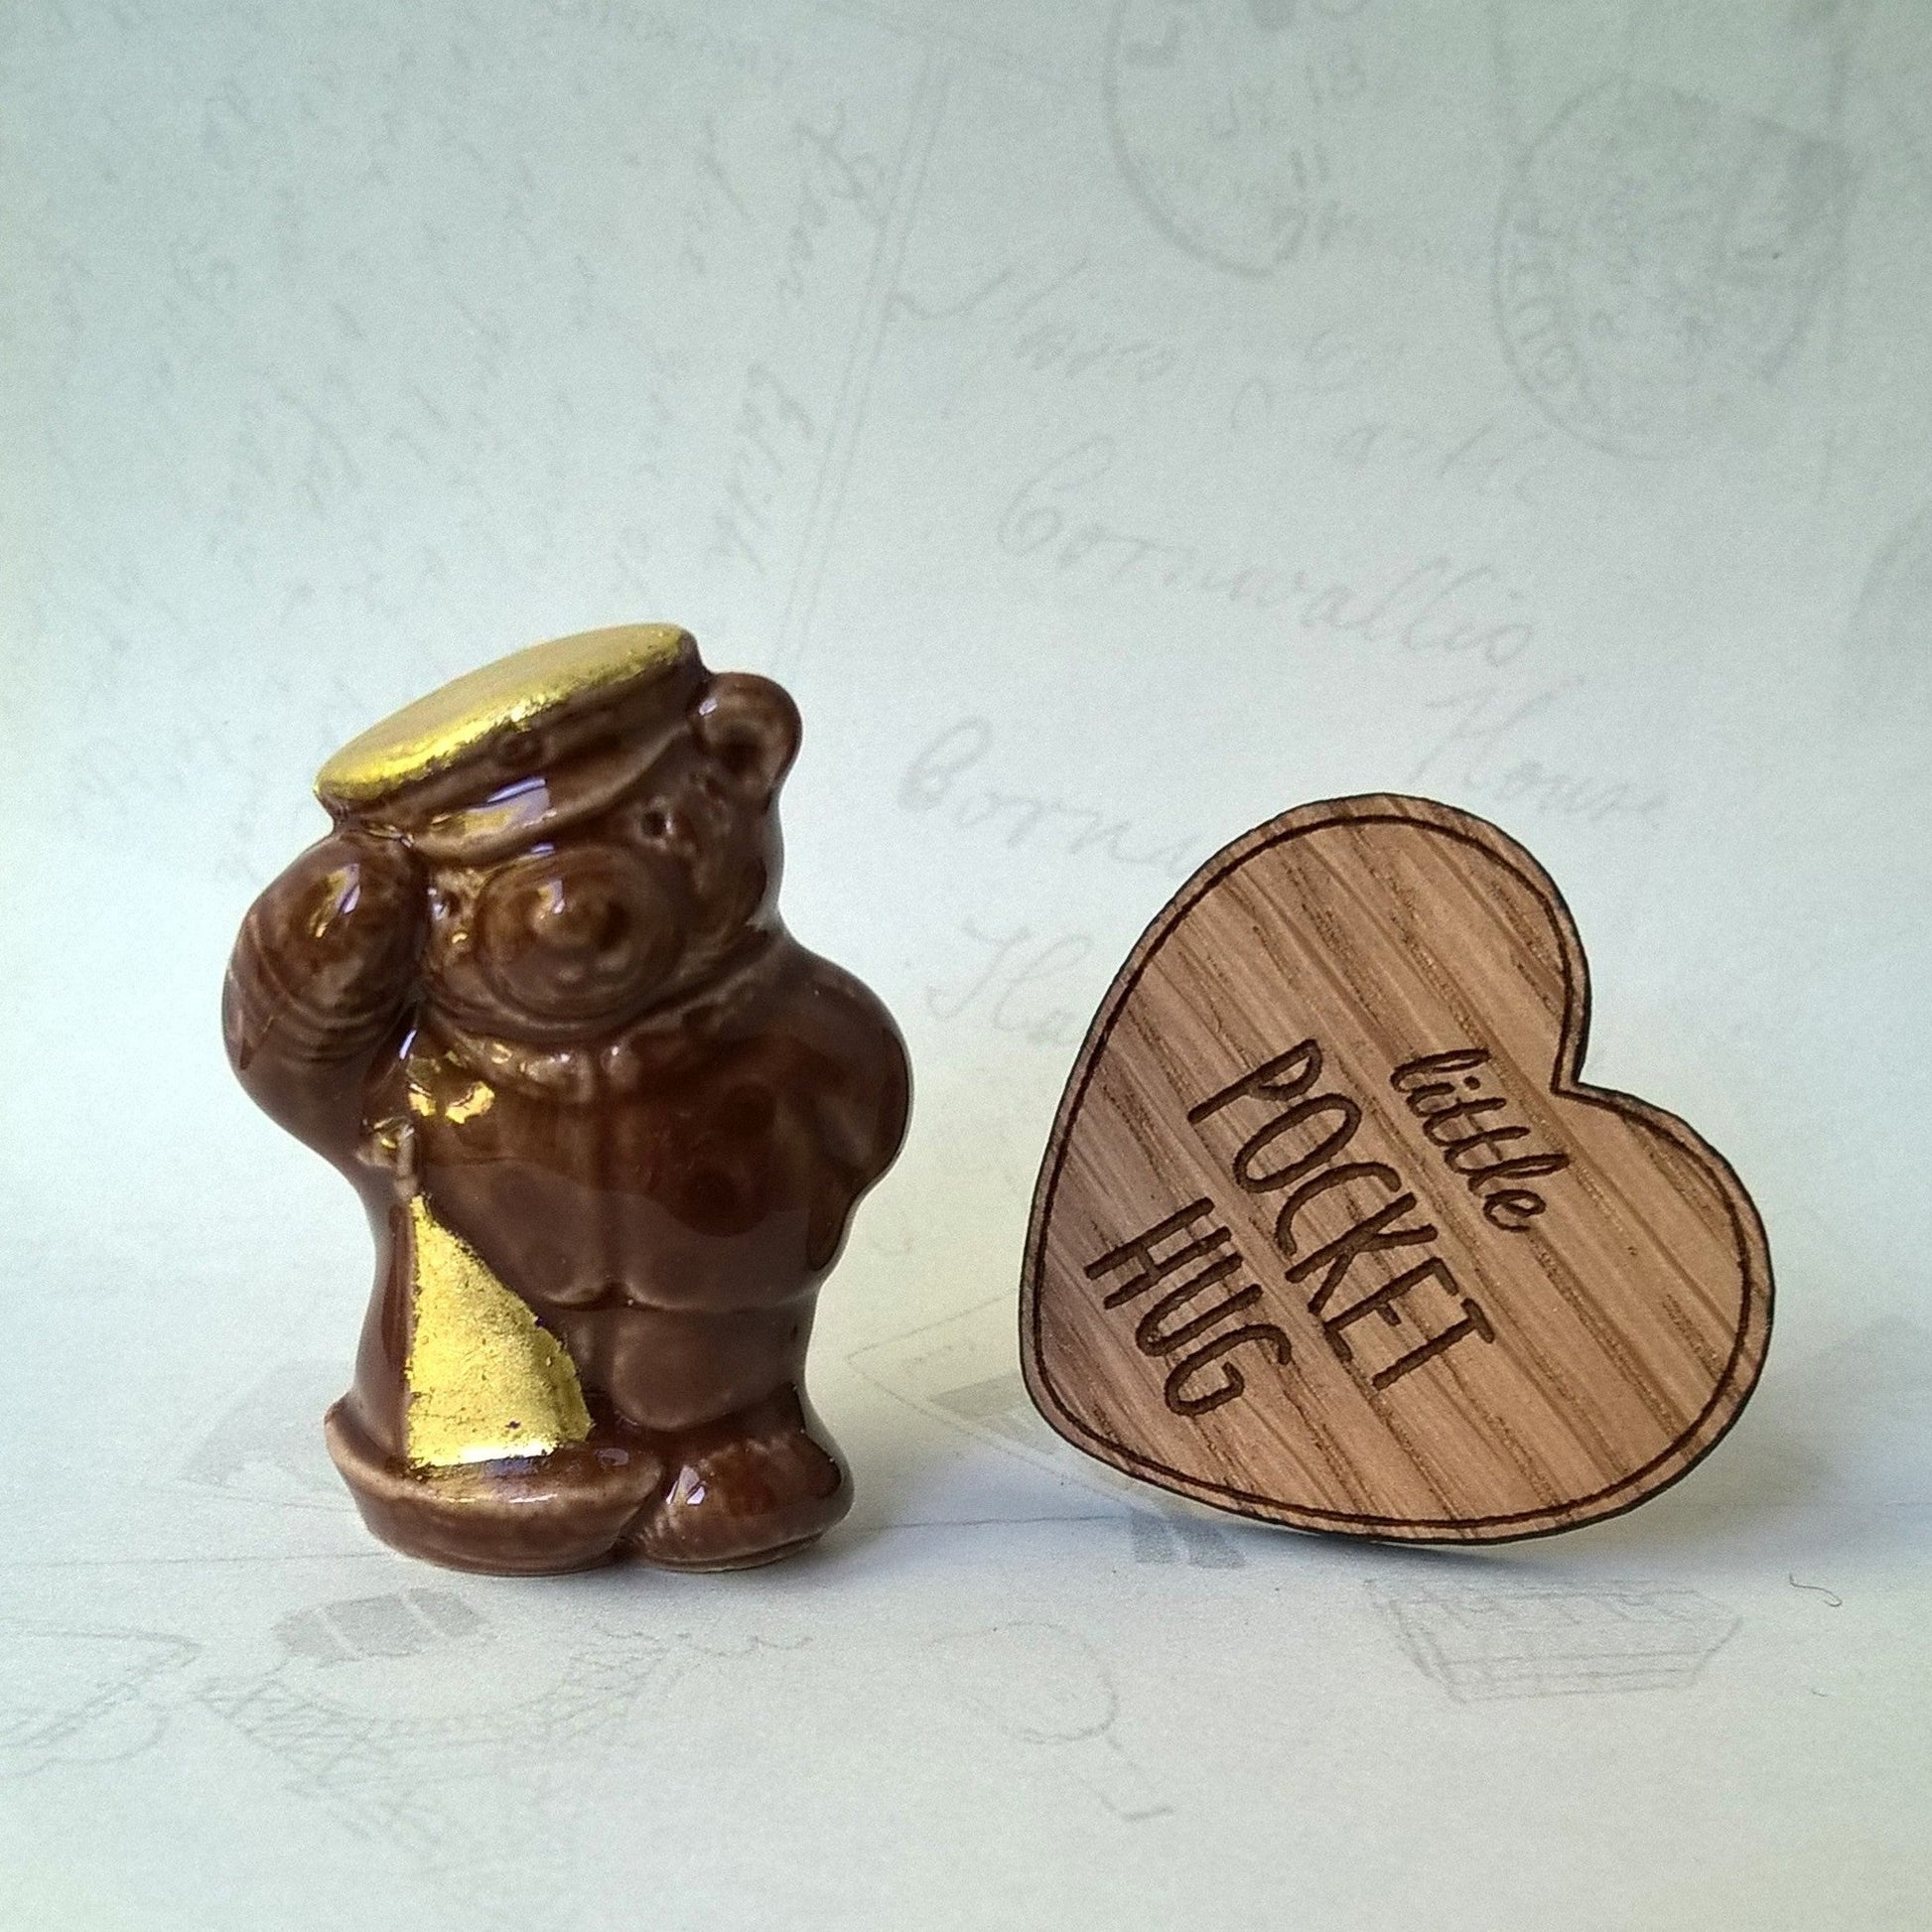 Little gilded vintage bear and engraved wooden heart pocket hug